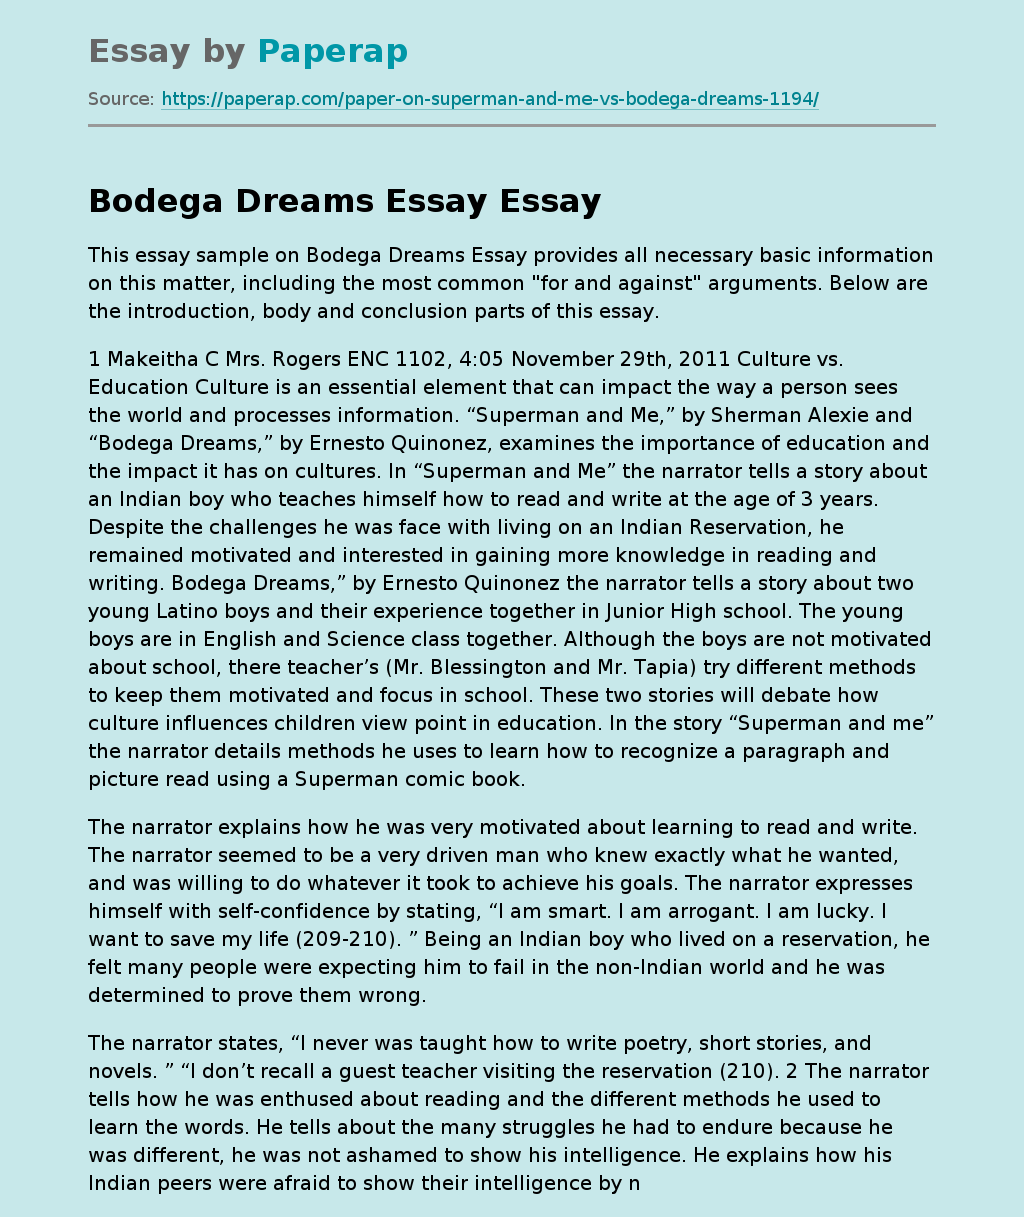 bodega dreams summary